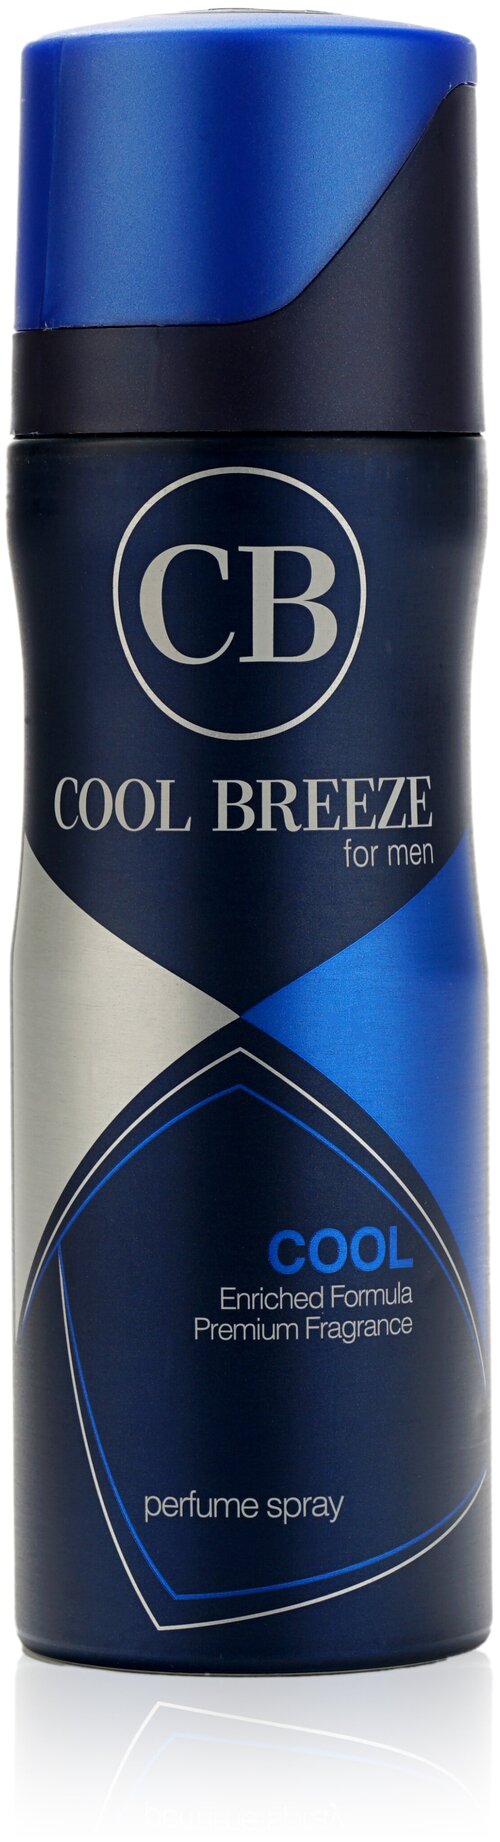 Дезодорант Cool Breeze мужской аэрозольный, Cool, 200 мл.